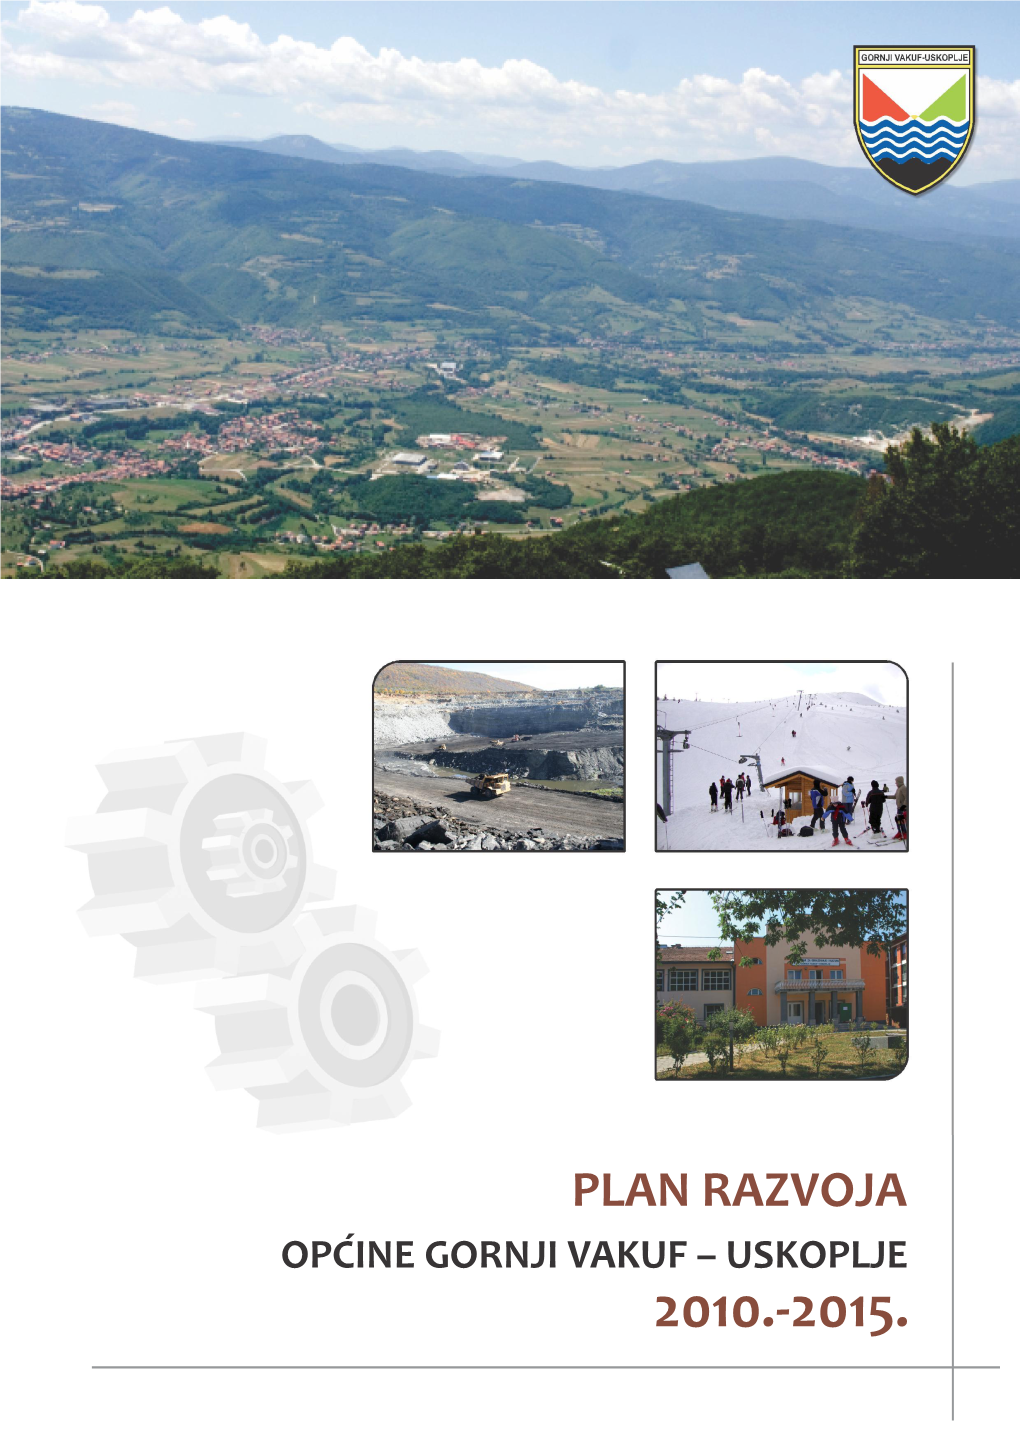 Plan Razvoja Općine Gornji Vakuf – Uskoplje 2010.-2015